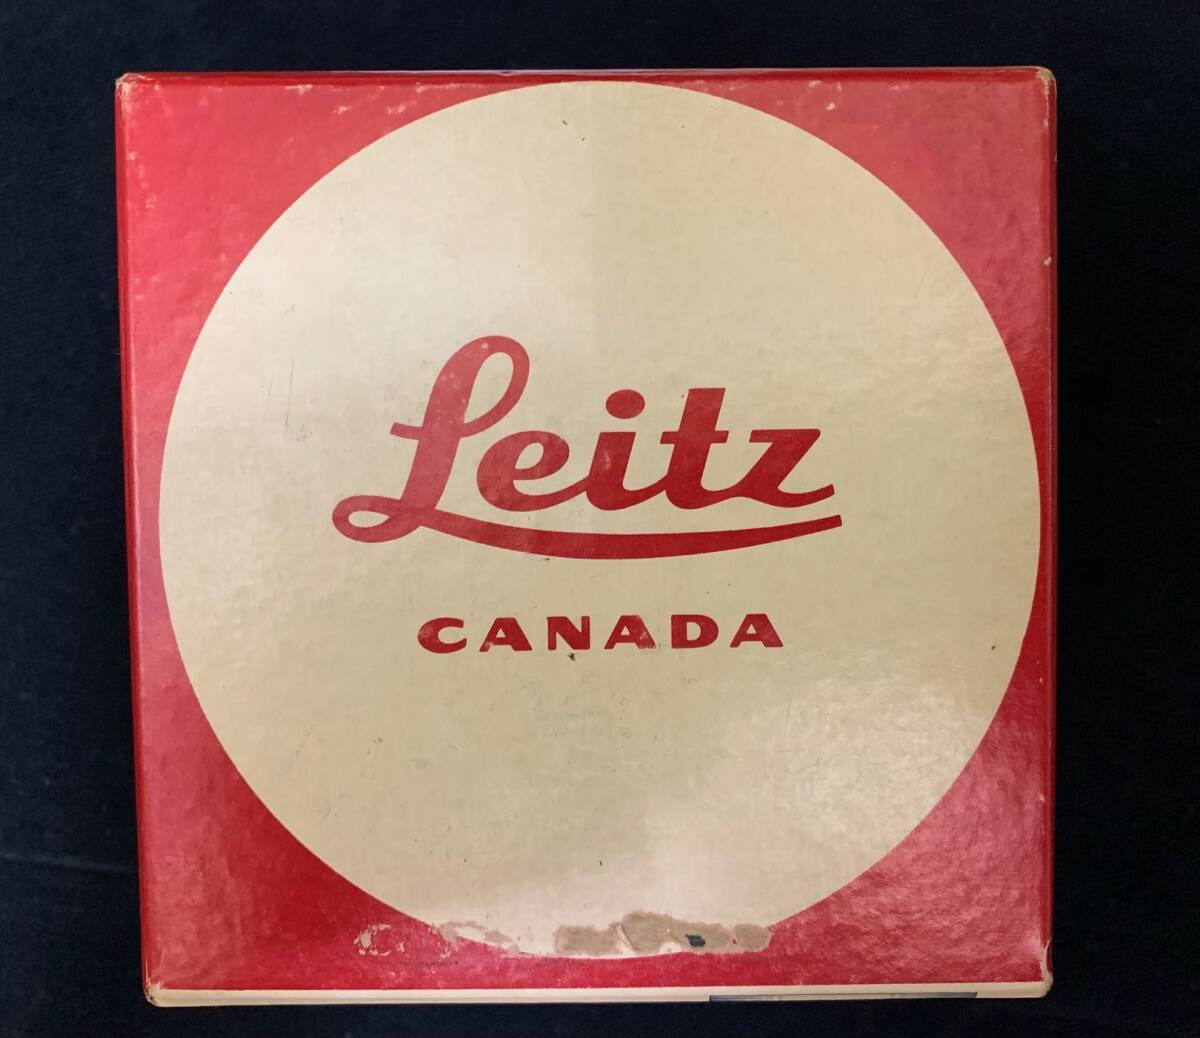 ライカ LEITZ CANADA ELMARIT 1:2.8 / 28mm レンズ 純正箱＋オリジナルサービスカード 1975年代製造 の画像1